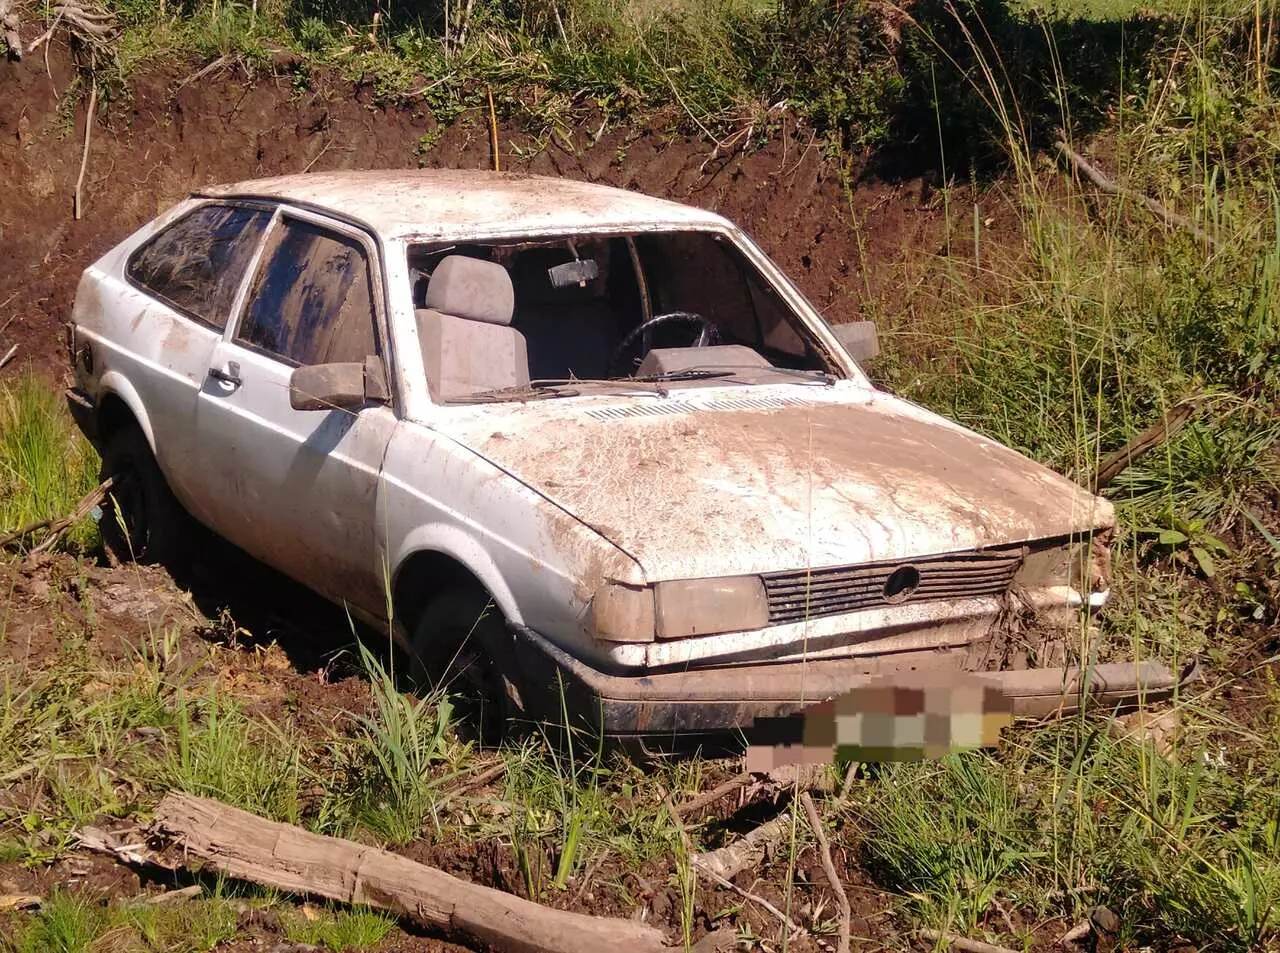 Pneu fura, motorista perde controle do carro e vai parar em barranco na Serra | Foto: Policia Militar Rodoviária